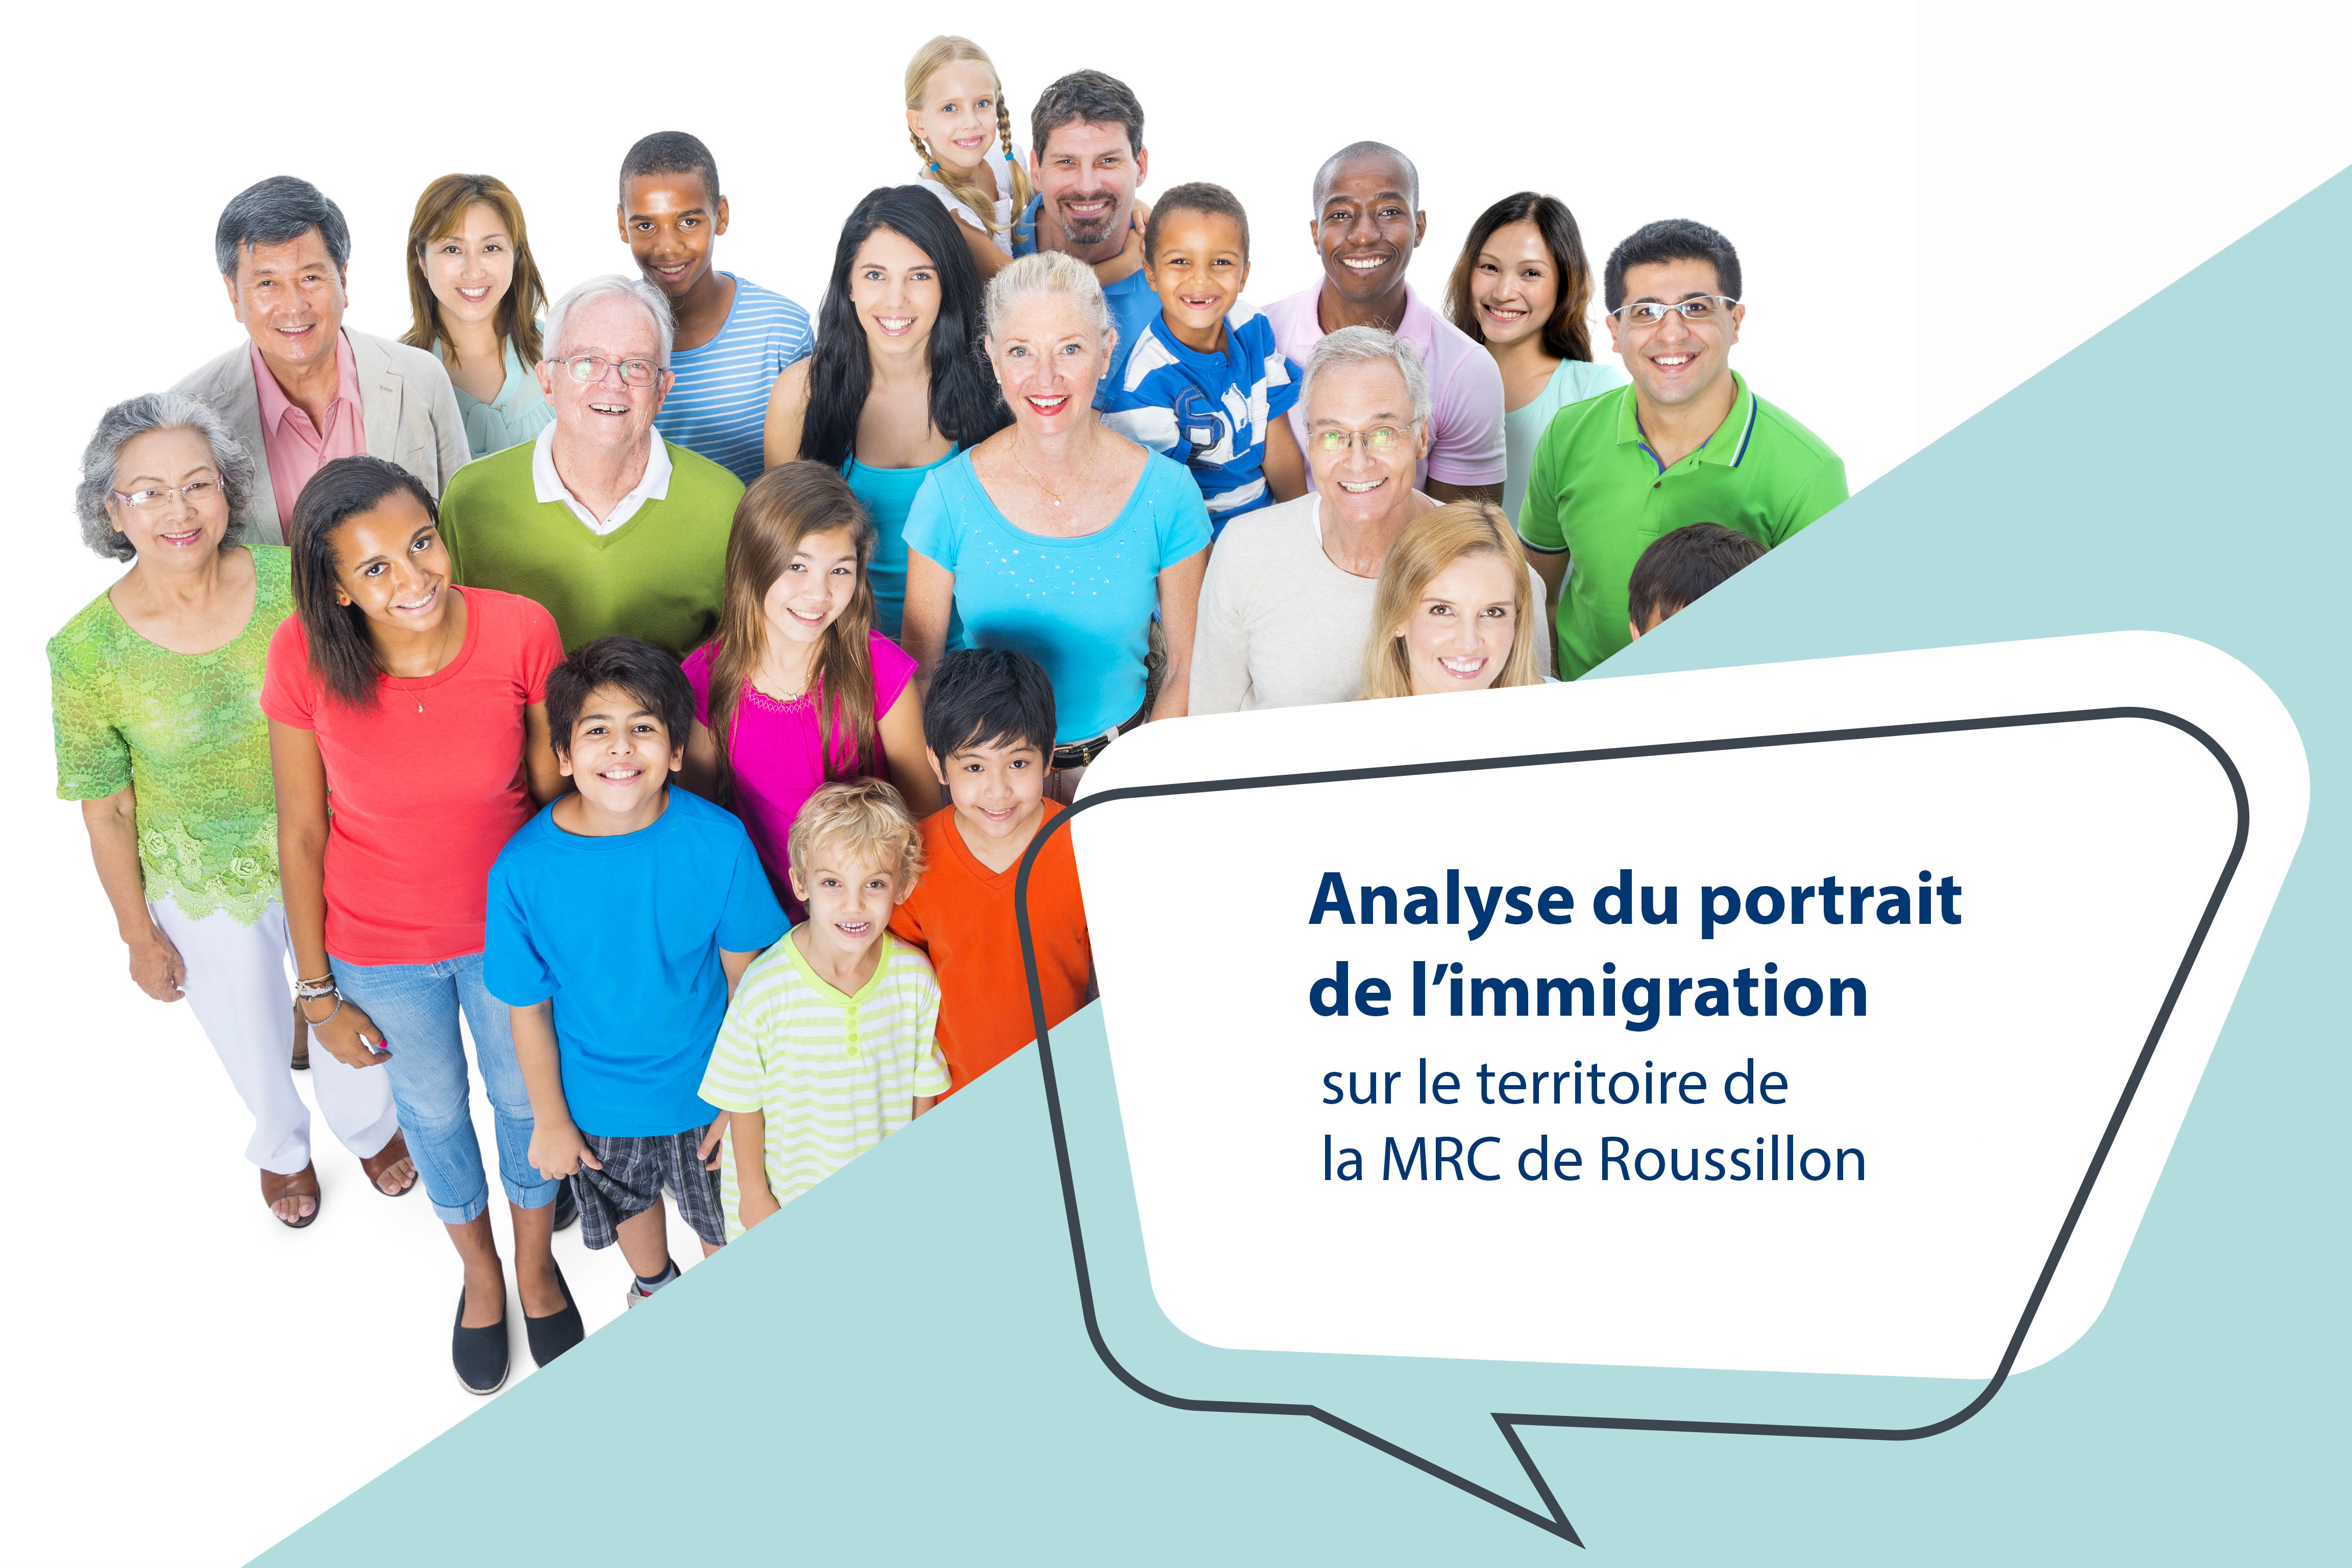 Analyse du portrait de l’immigration sur le territoire de la MRC de Roussillon